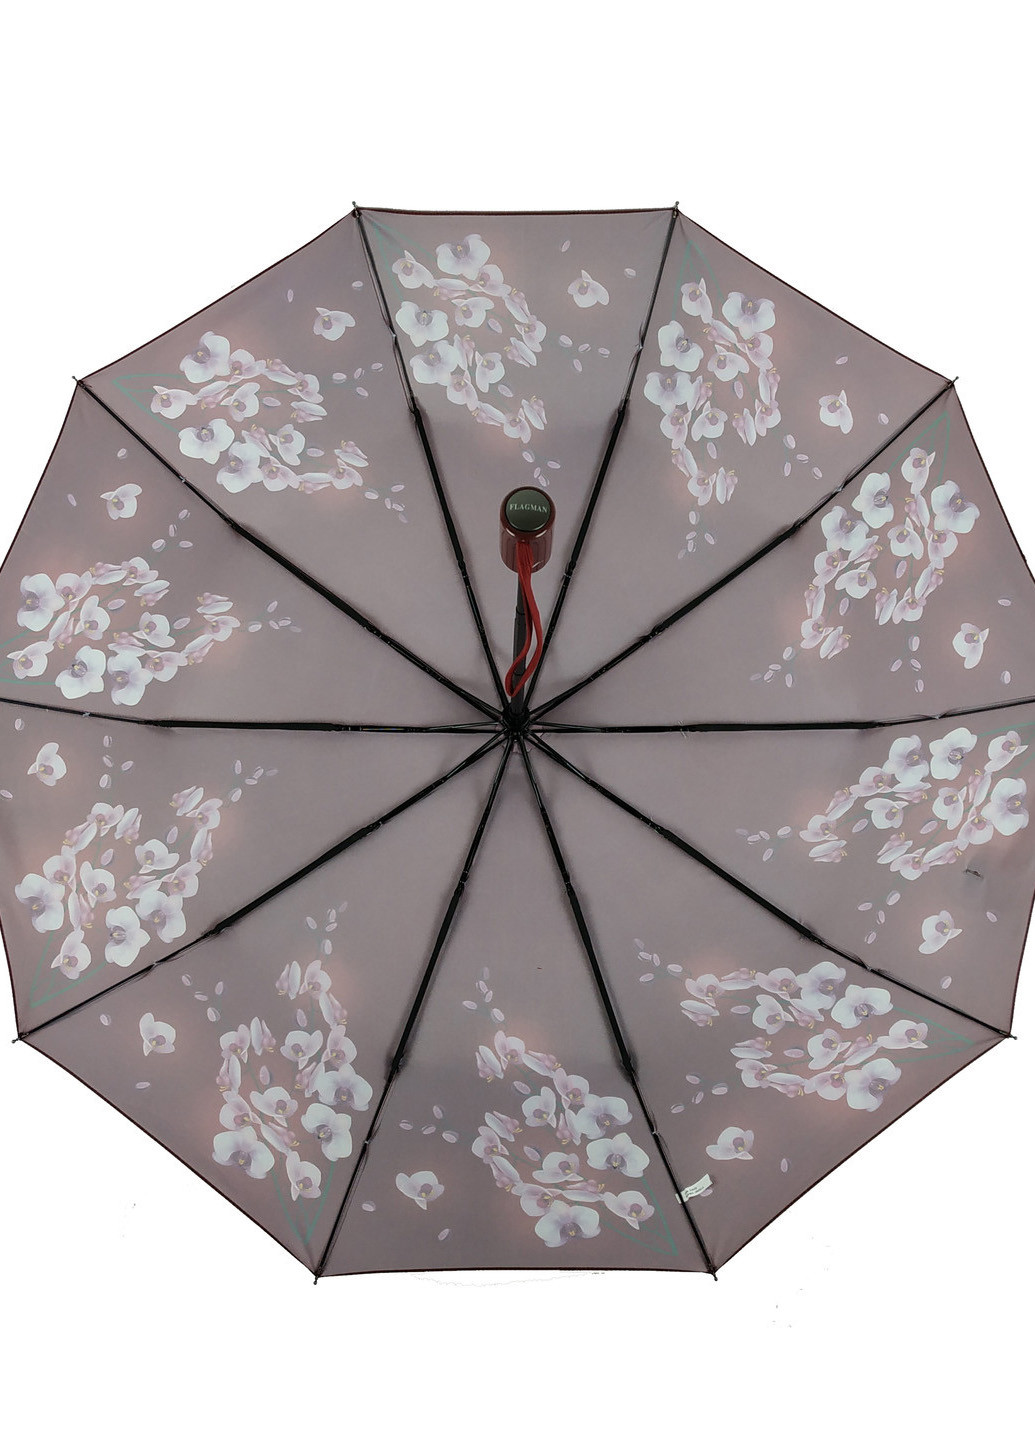 Женский полуавтоматический зонт (733) 98 см Flagman (189978959)